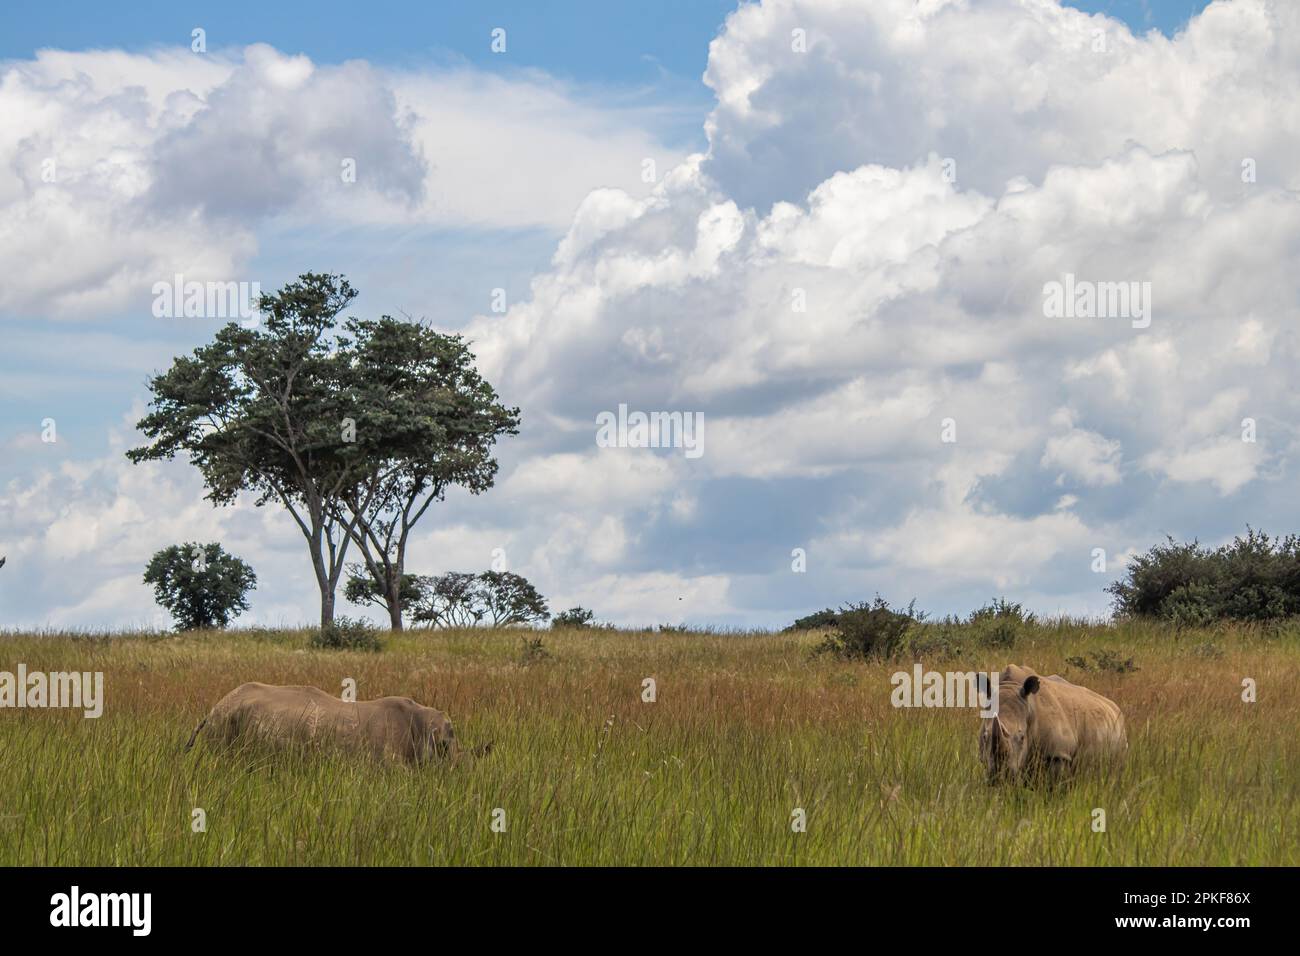 Rhinocéros blanc ou rhinocéros à lèvres carrées (Ceratotherium simum) à Imire Rhino & Wildlife Conservancy, Zimbabwe Banque D'Images